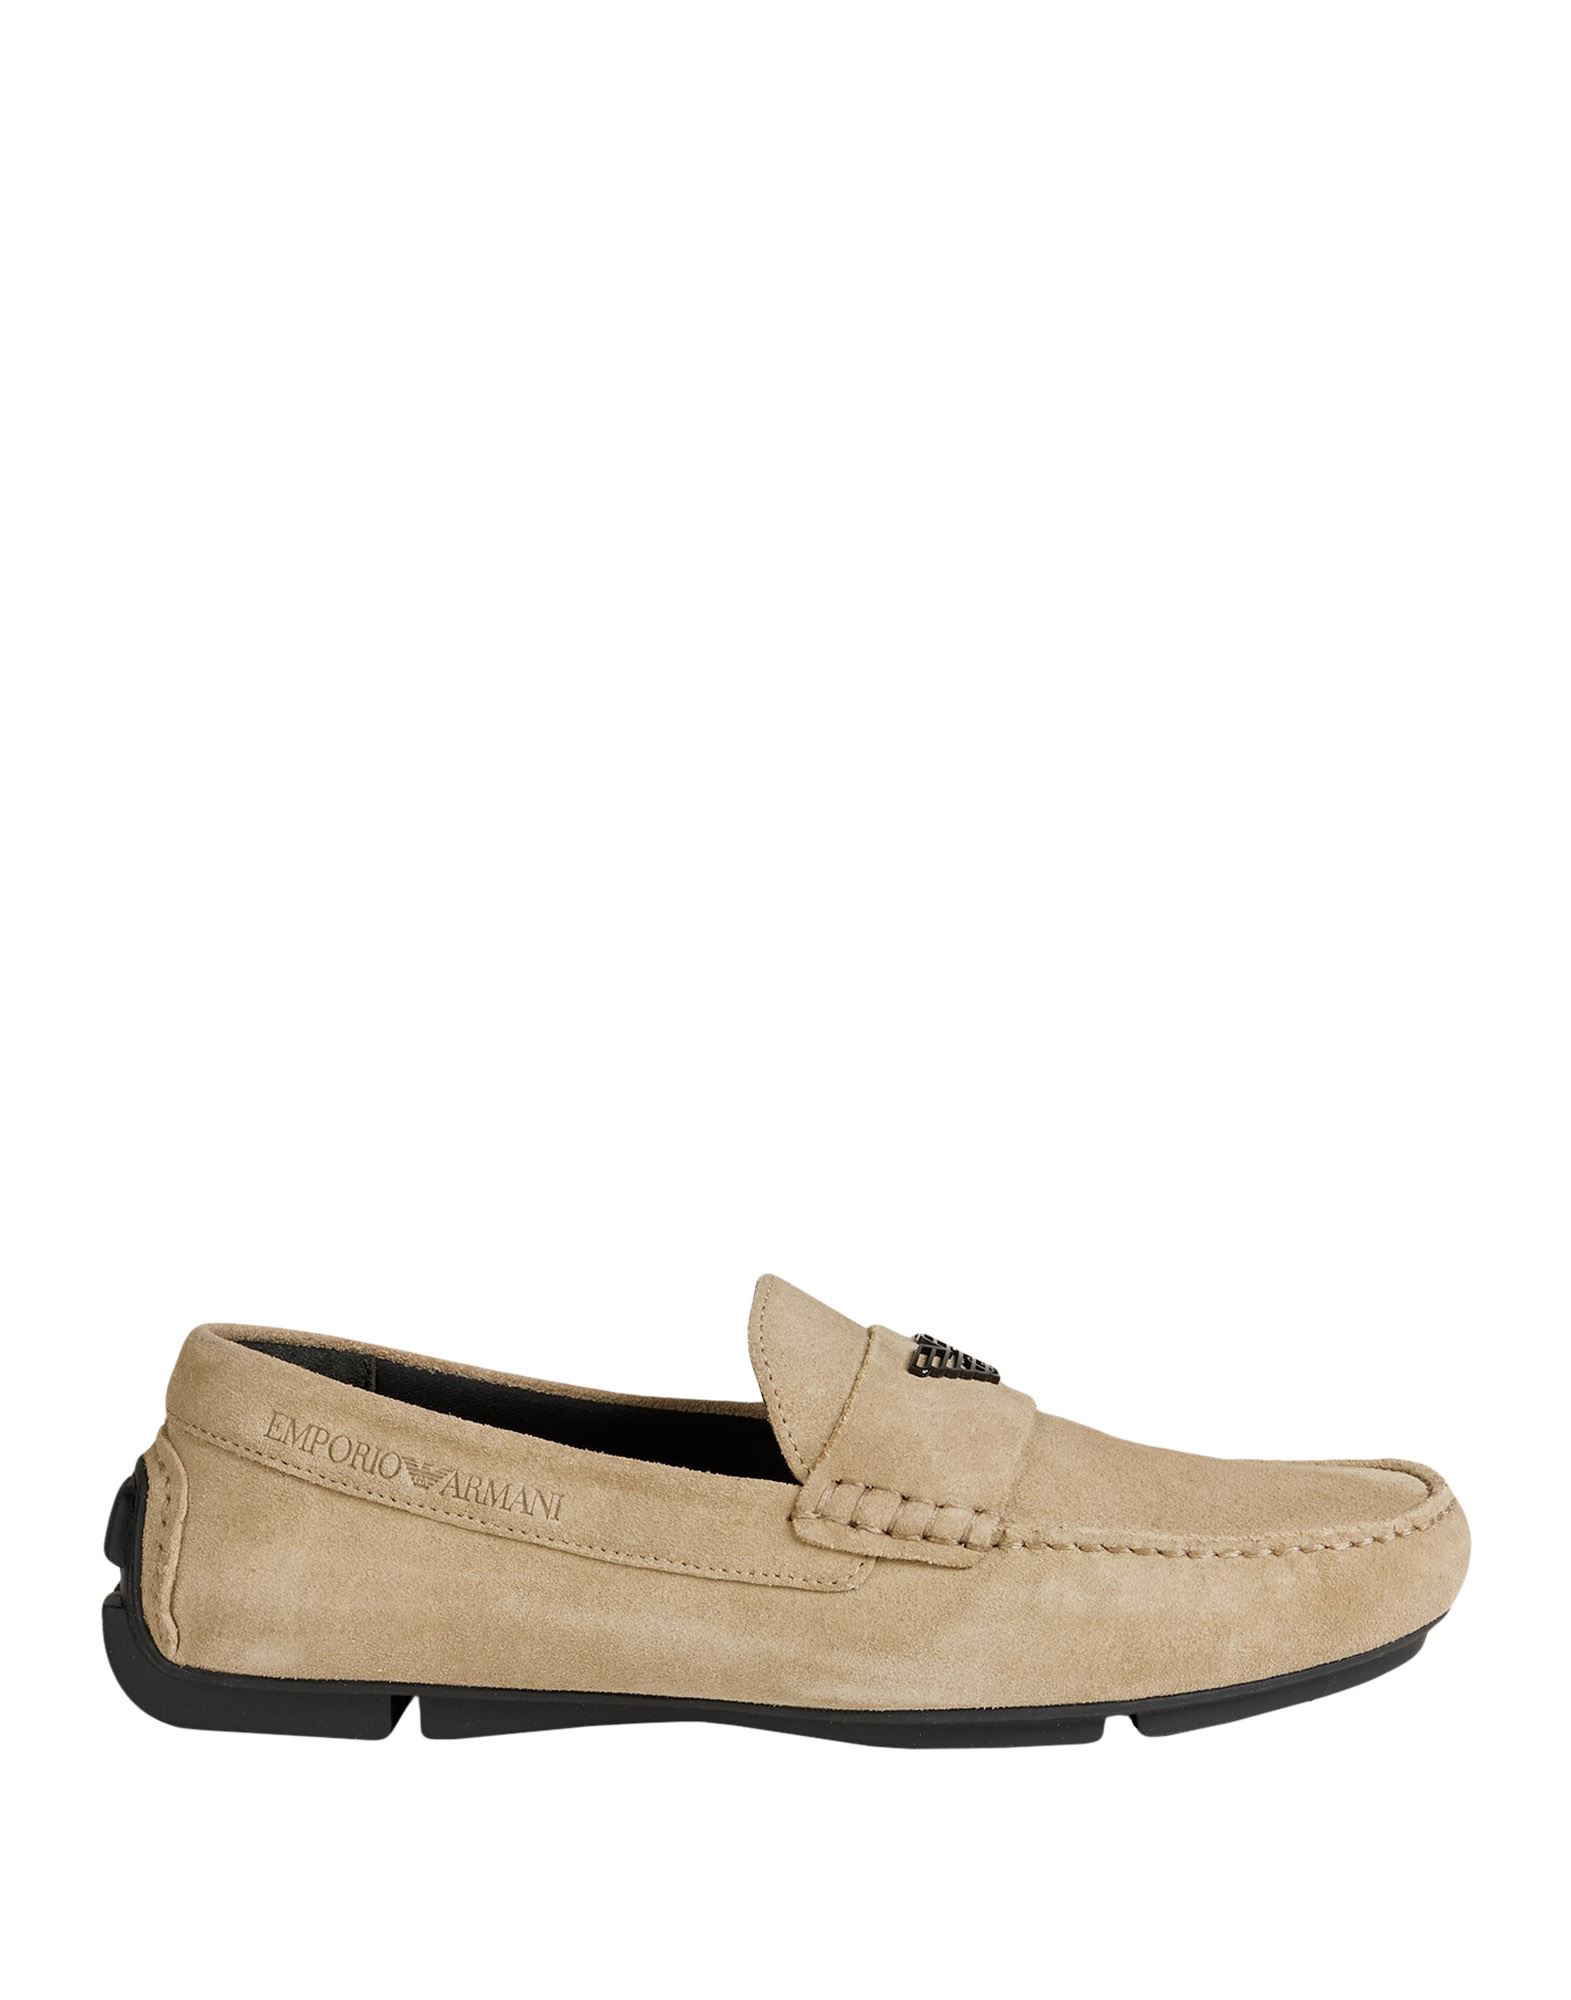 Emporio Armani Loafers In Dove Grey | ModeSens